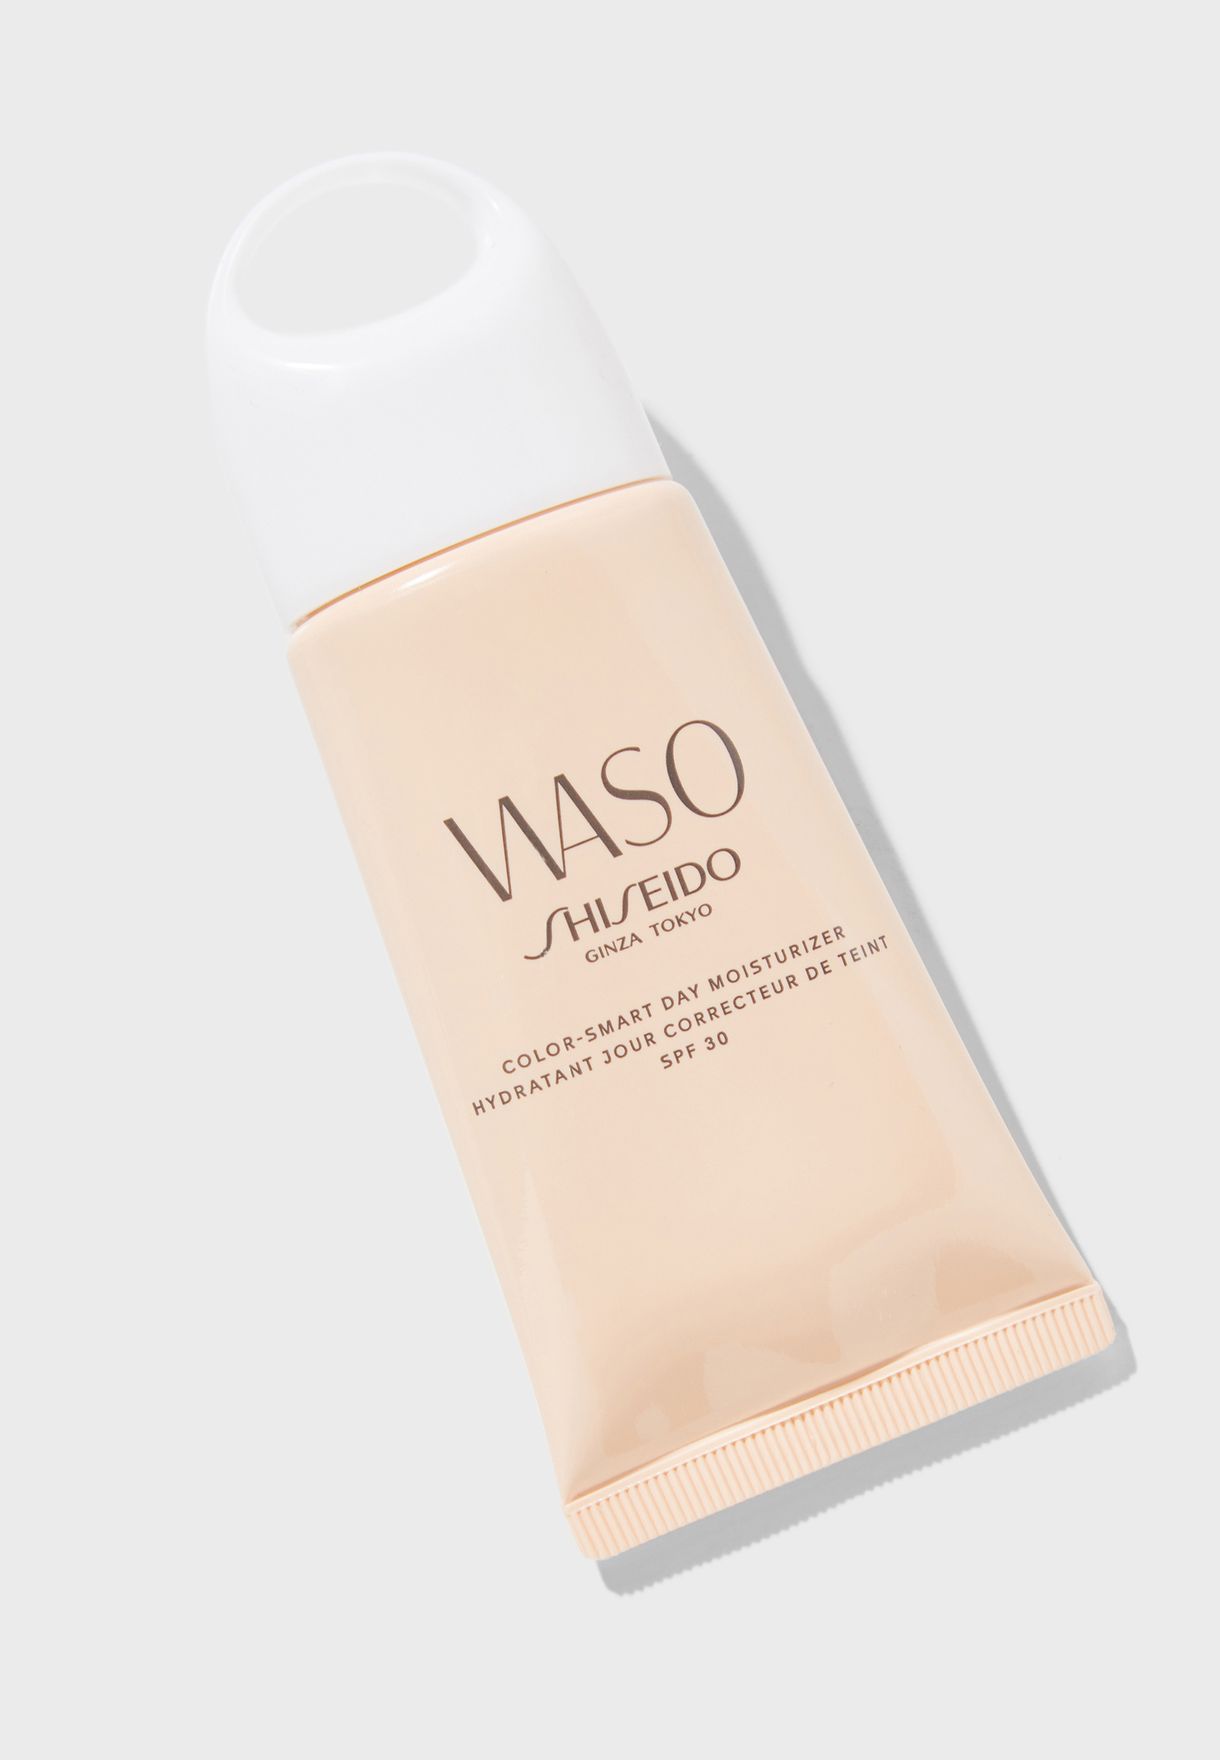 Shiseido waso color. Waso Shiseido Color Smart Day Moisturizer. Shiseido Waso Color-Smart. Waso шисейдо СПФ. Shiseido тонирующее средство Waso.